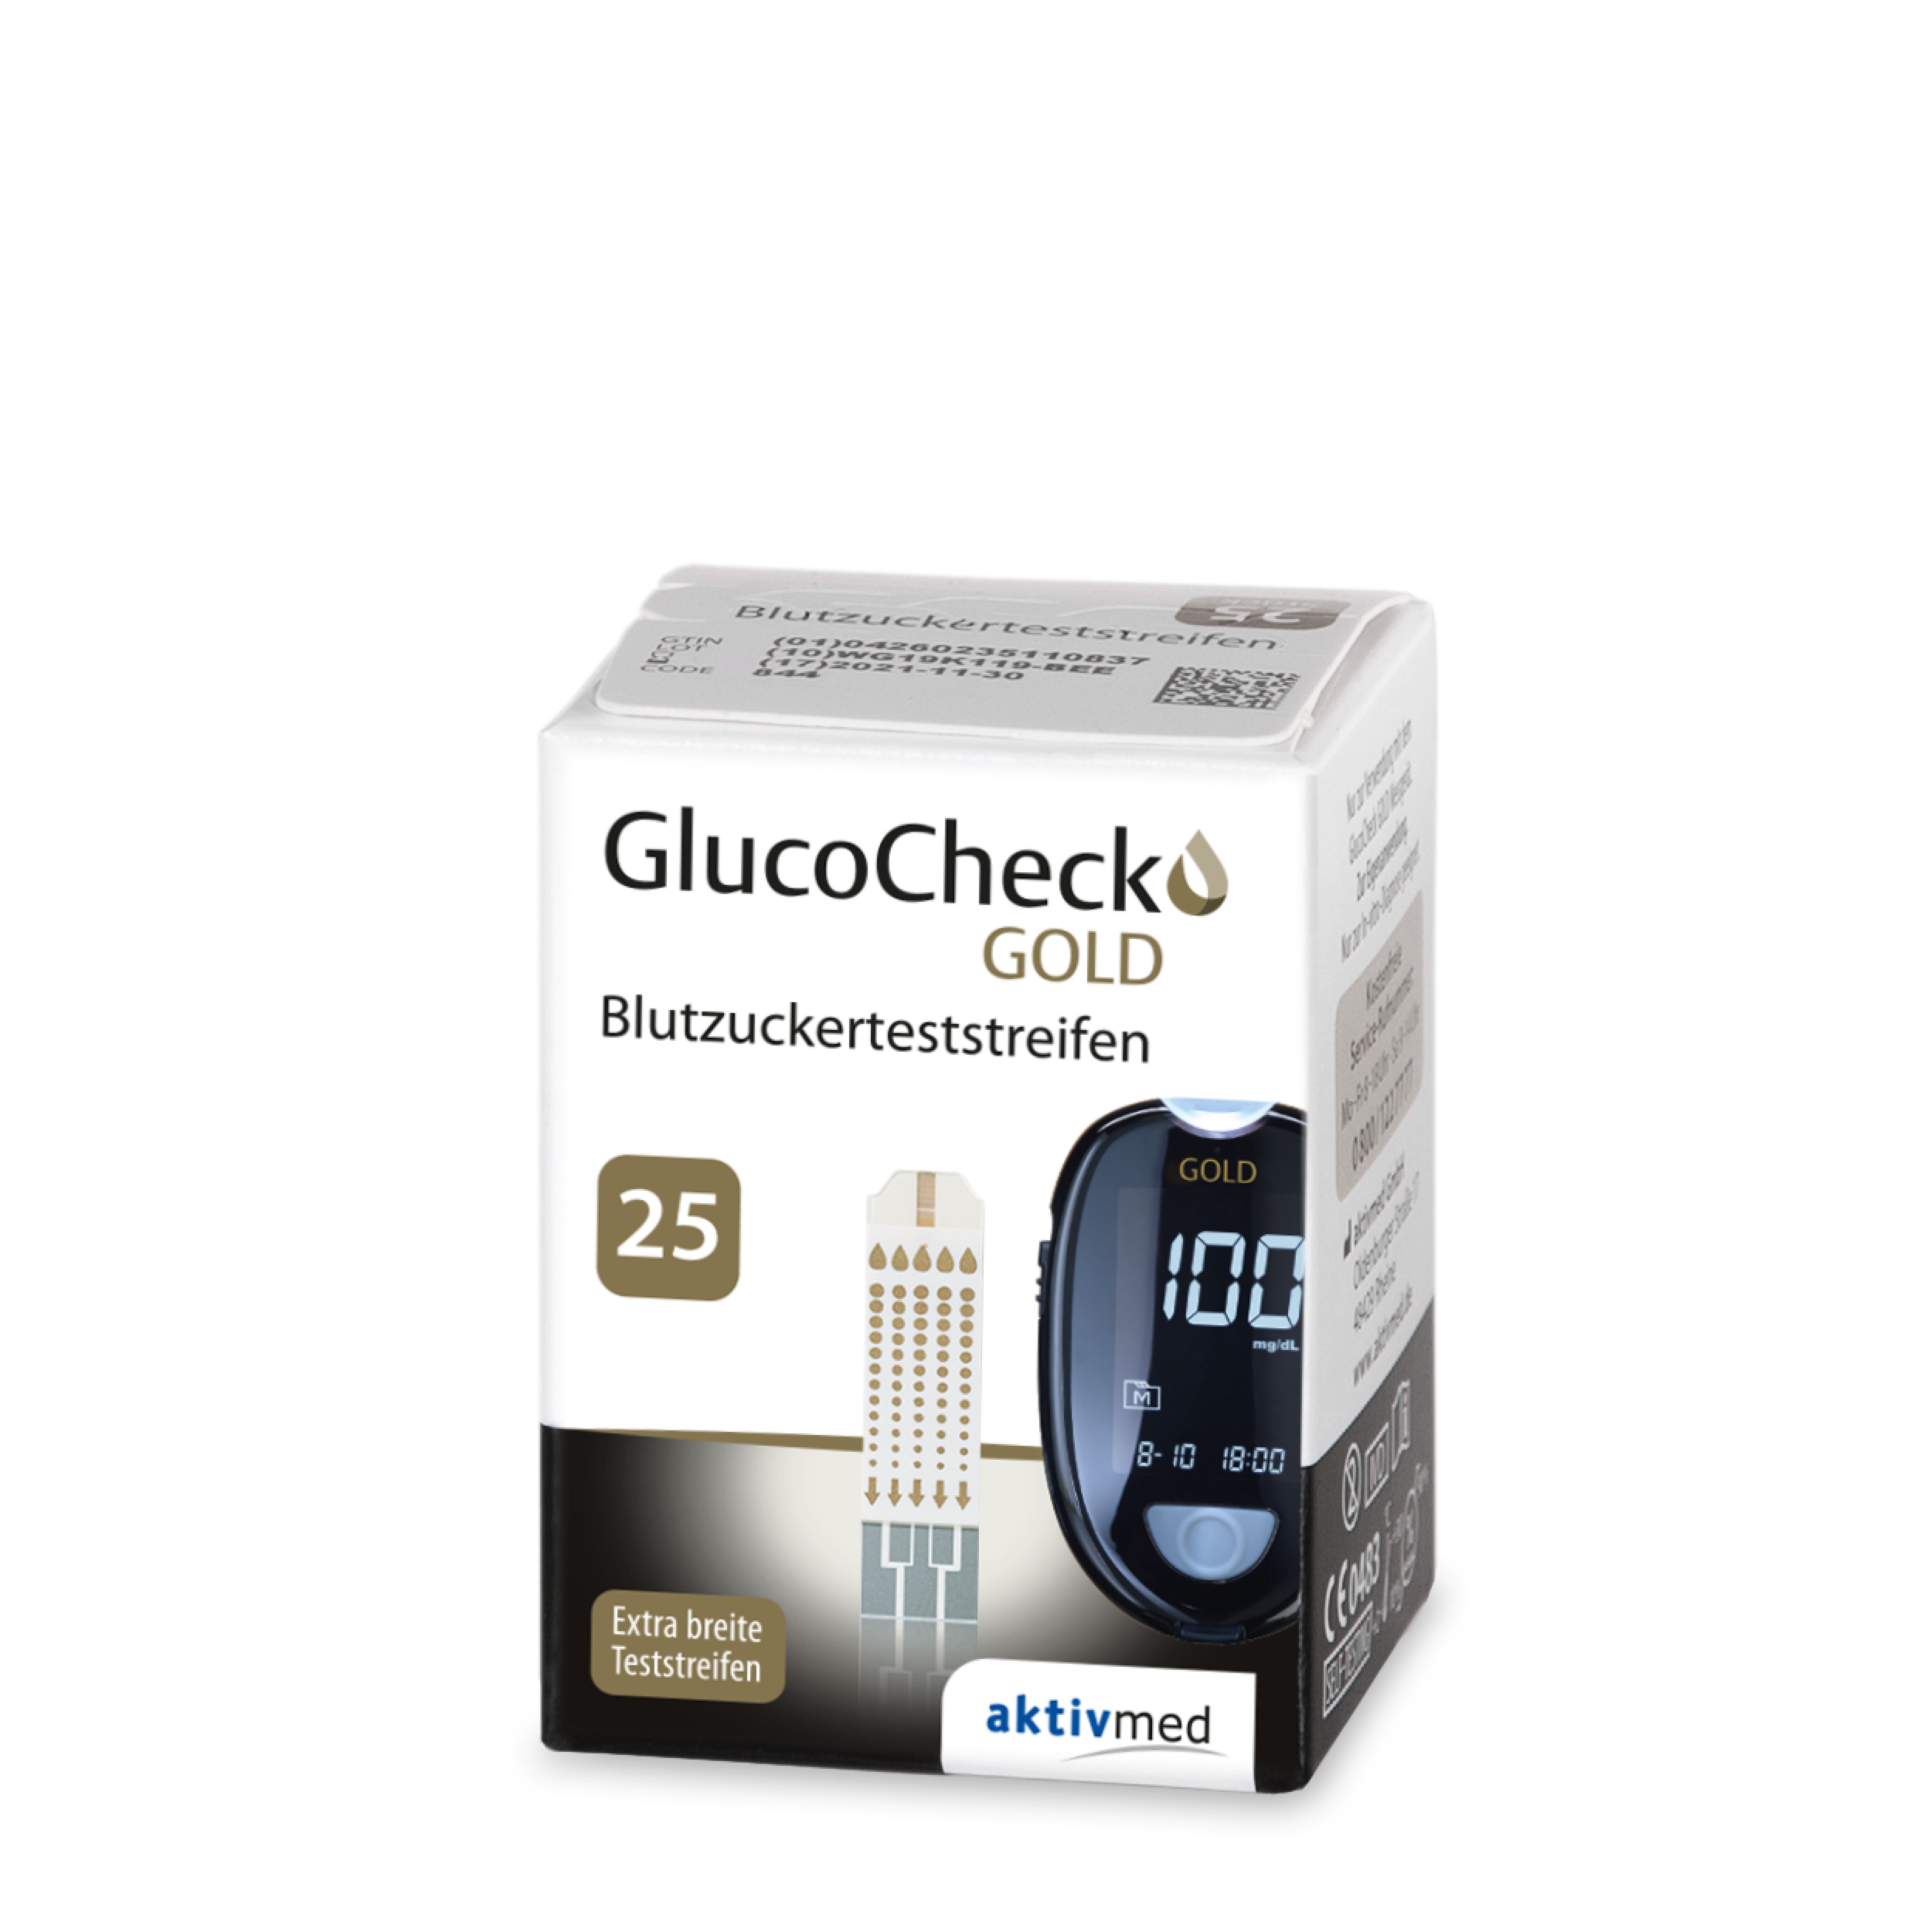 Glucocheck gold blood sugar test strips